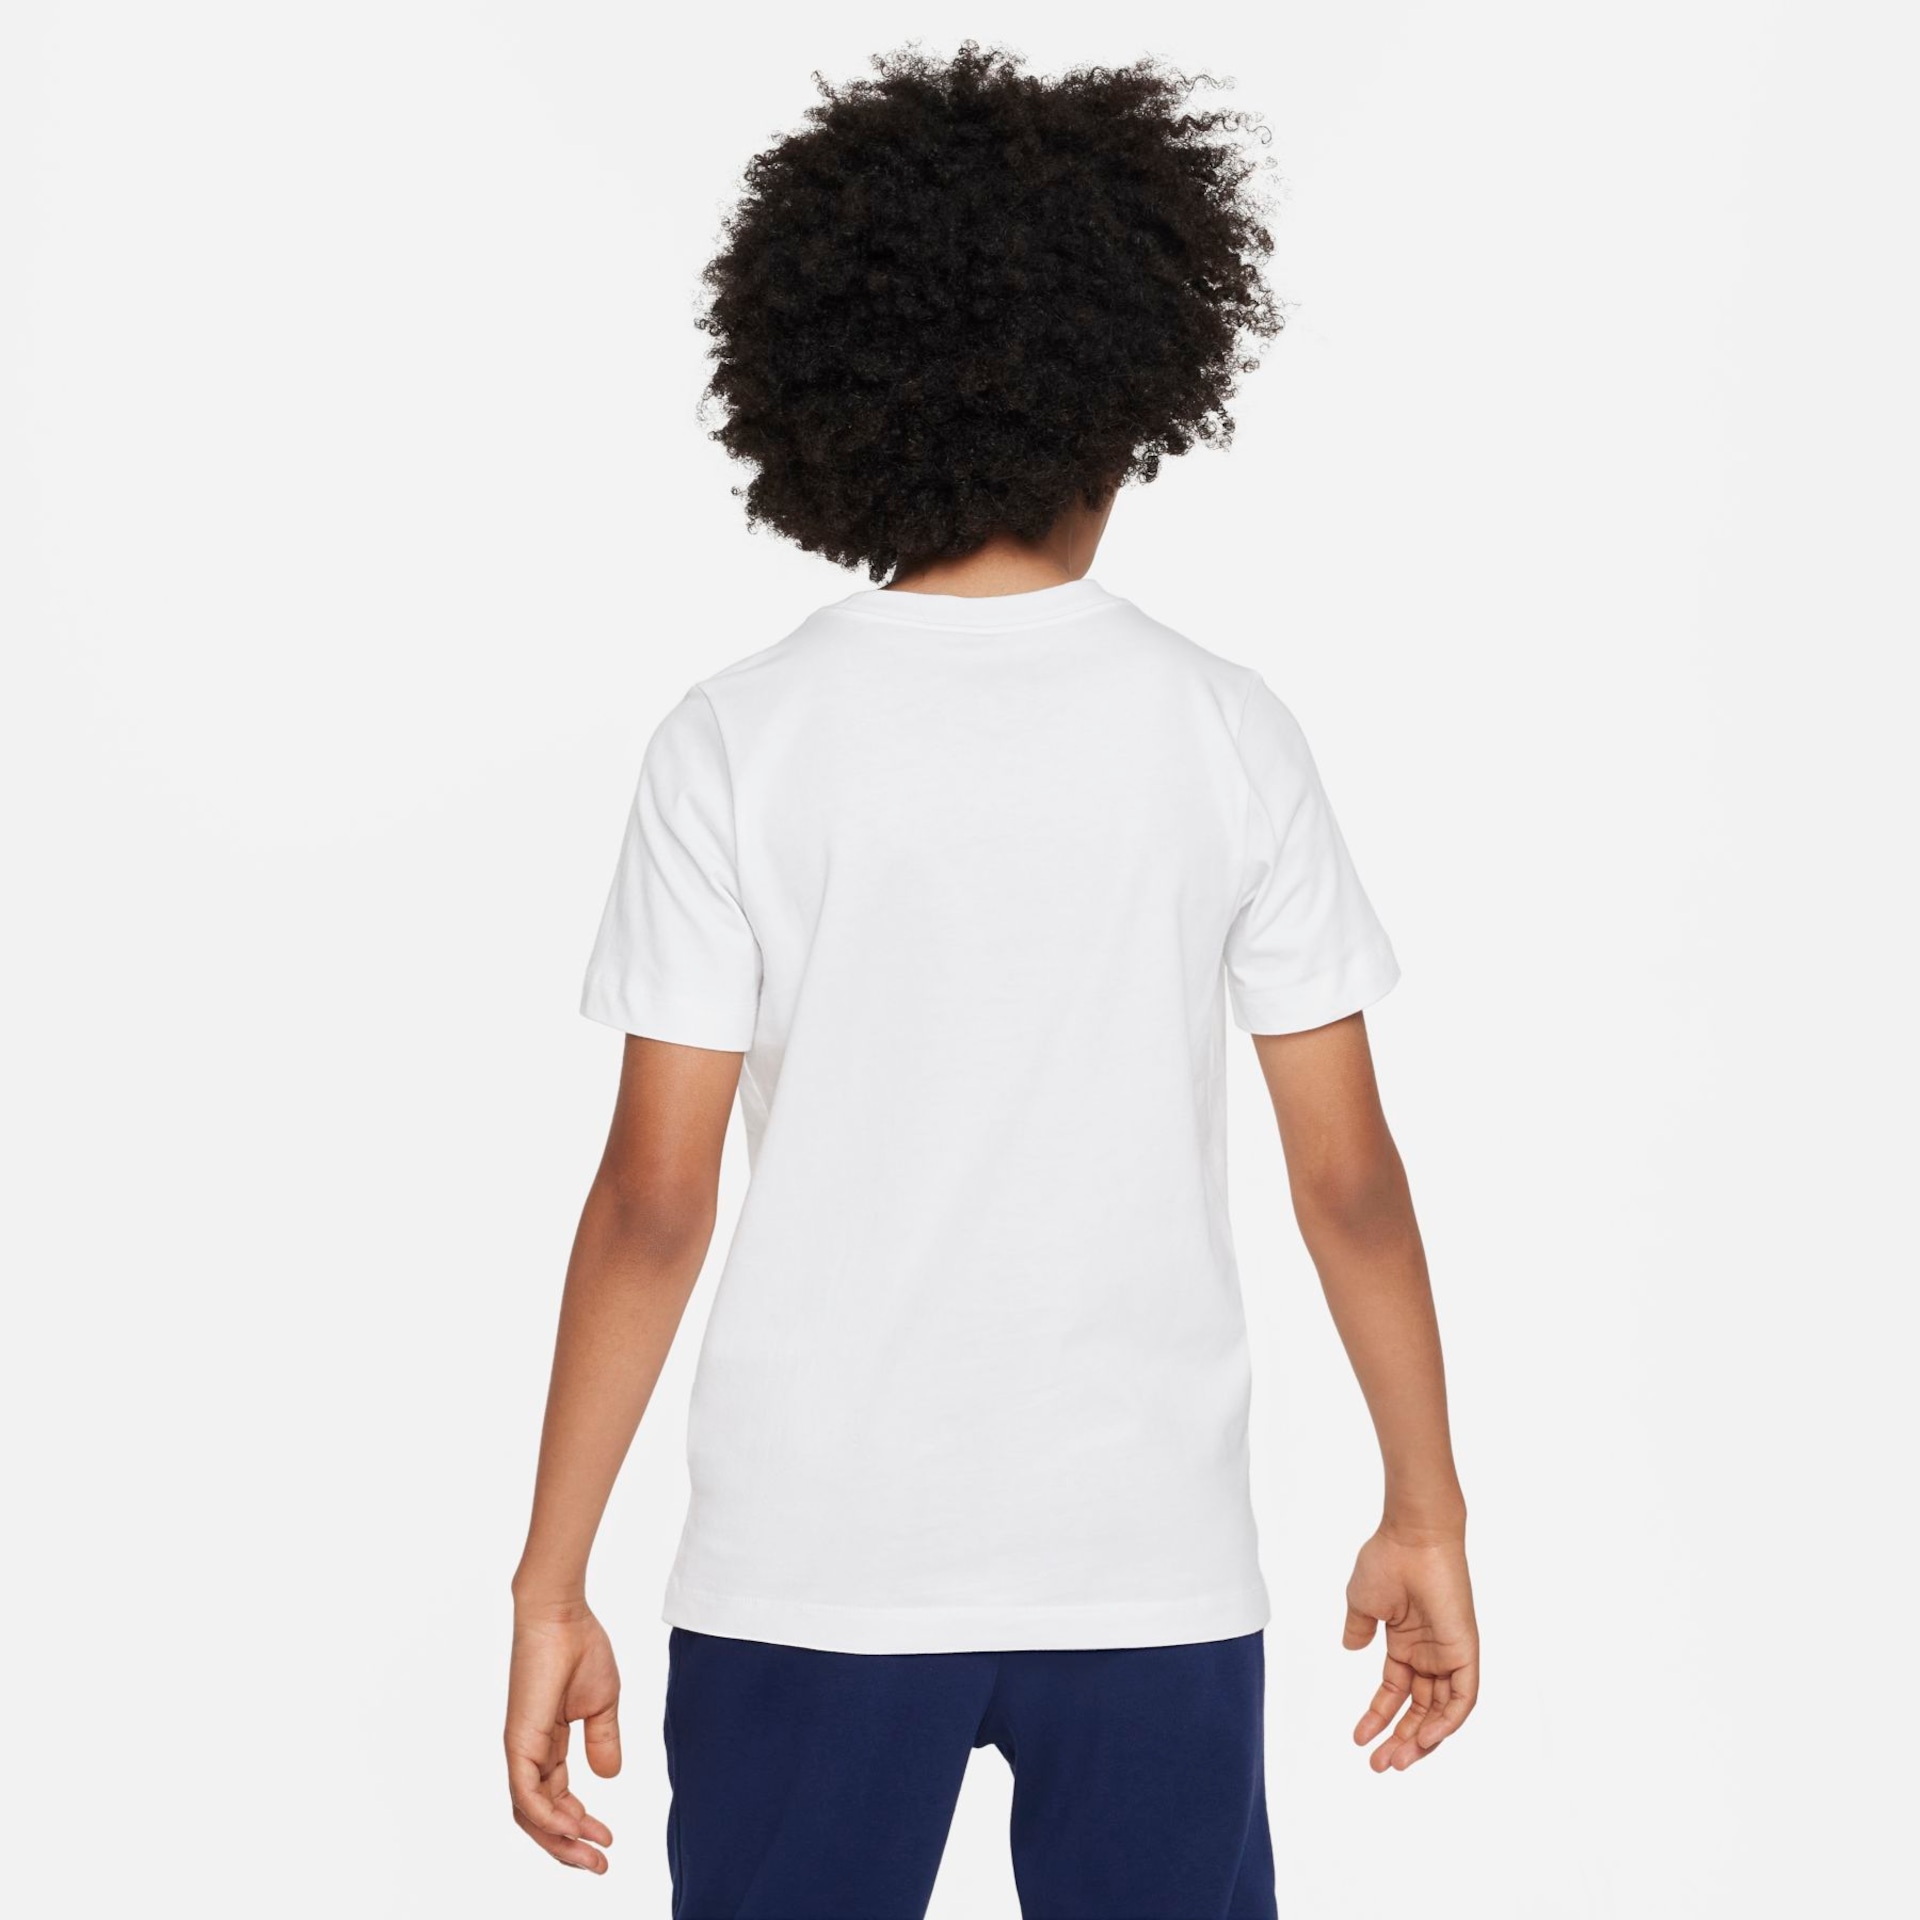 Camiseta Nike Paris Saint-Germain Mascot Infantil - Foto 2